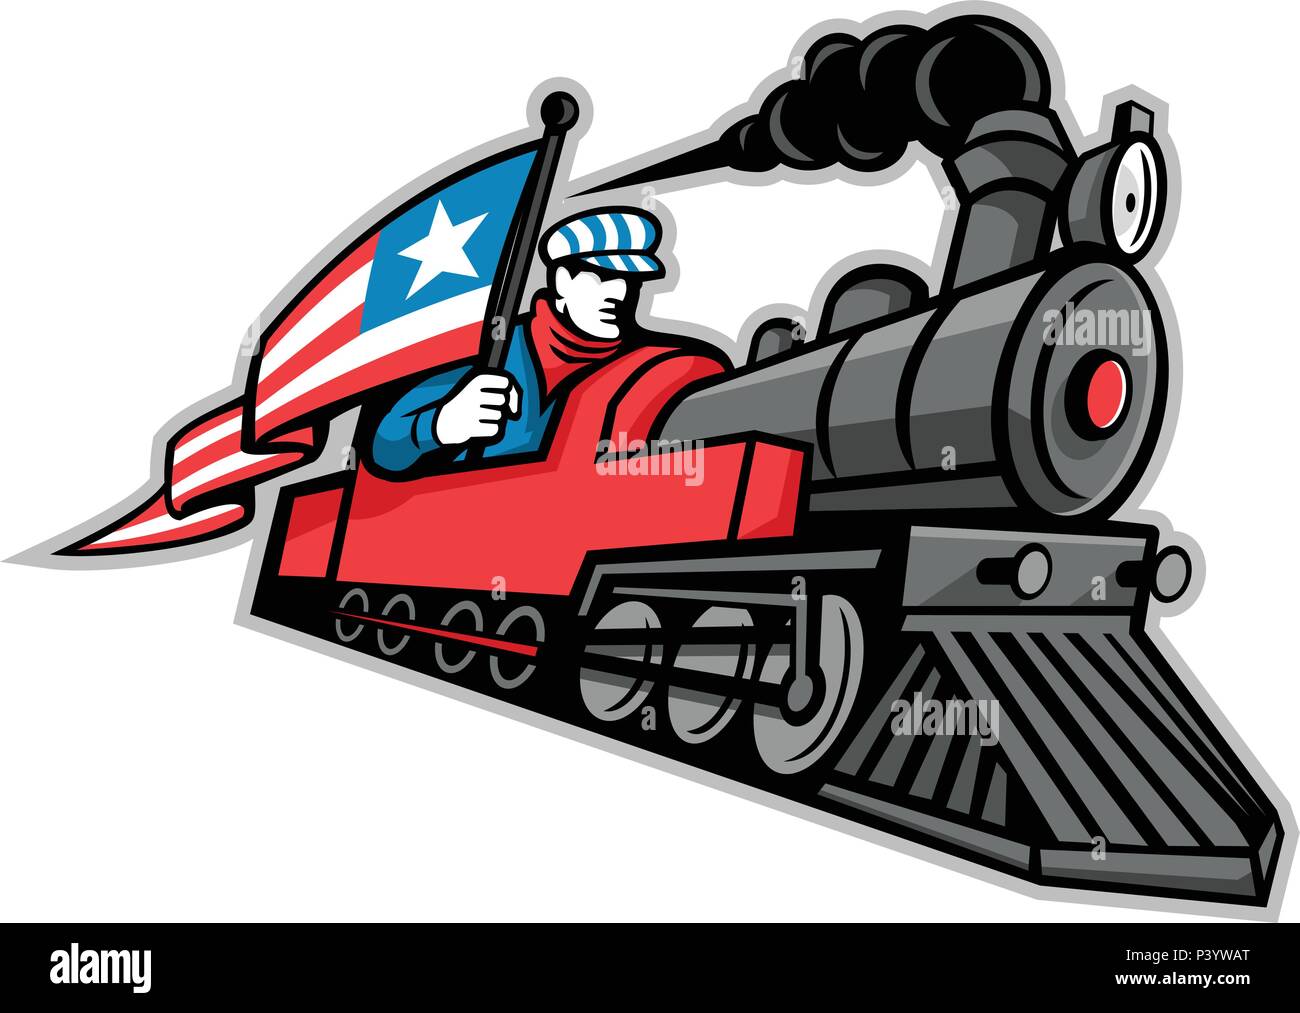 Maskottchen Symbol Abbildung einer alten Dampflokomotive oder Zug mit einem Lokführer, Ingenieur oder Mechaniker Holding eine amerikanische Sternenbanner Flagge o Stock Vektor